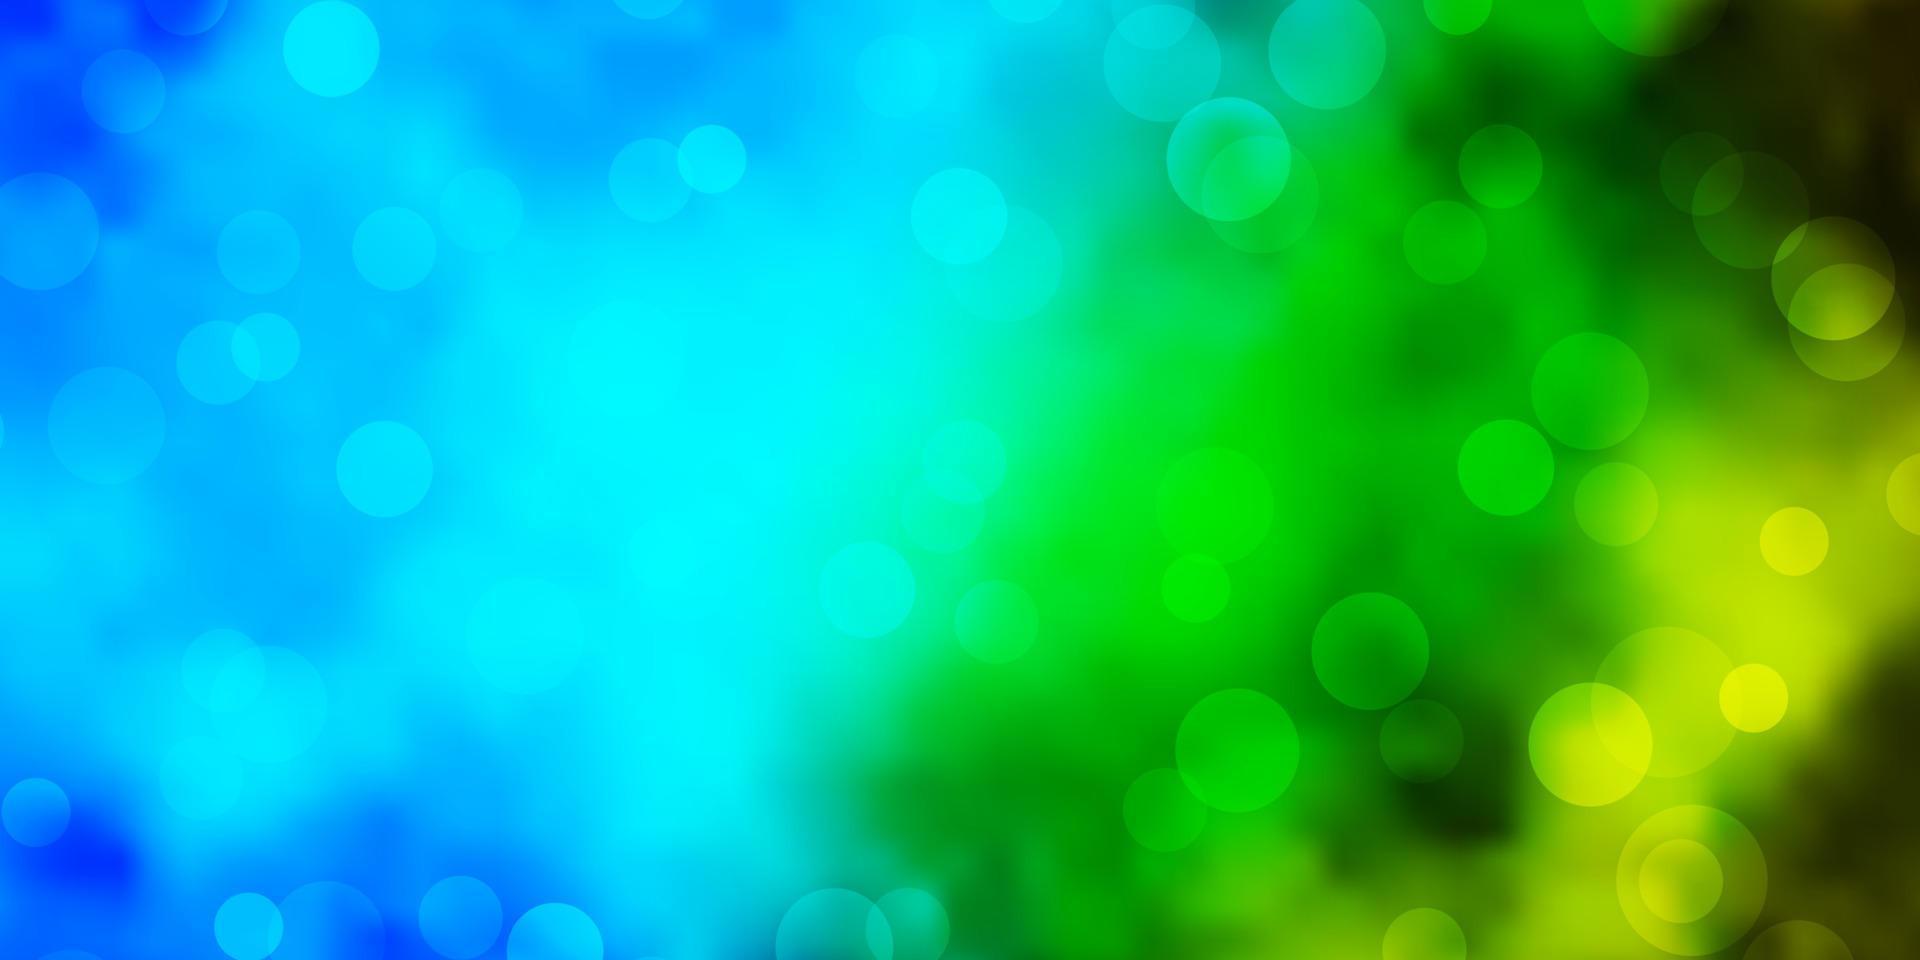 hellblauer, grüner Vektorhintergrund mit Kreisen. vektor